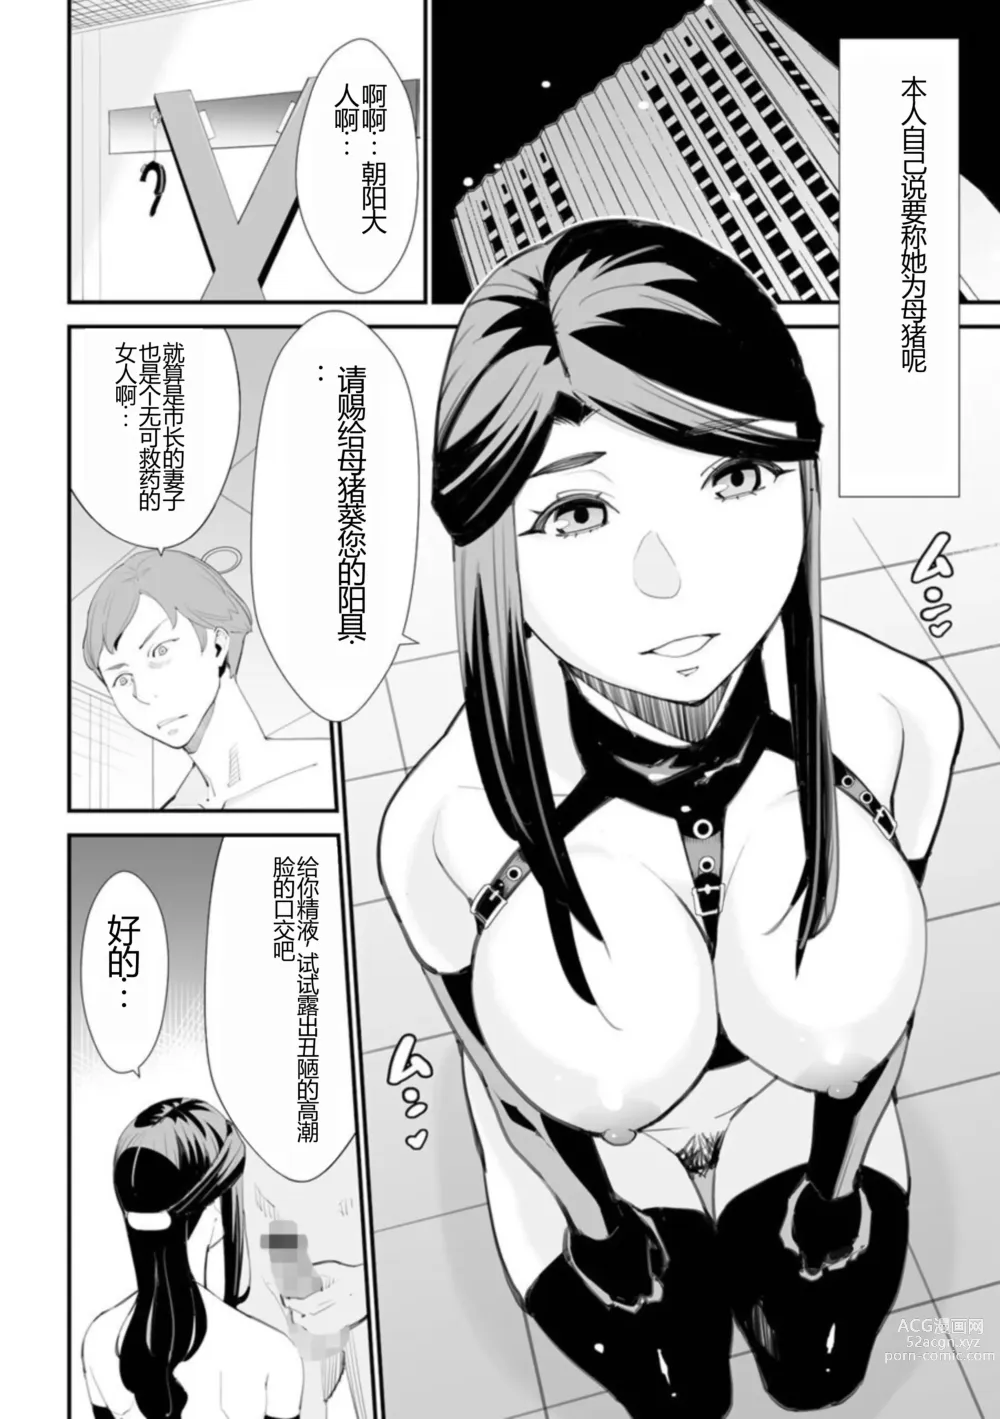 Page 4 of manga Abudzuma